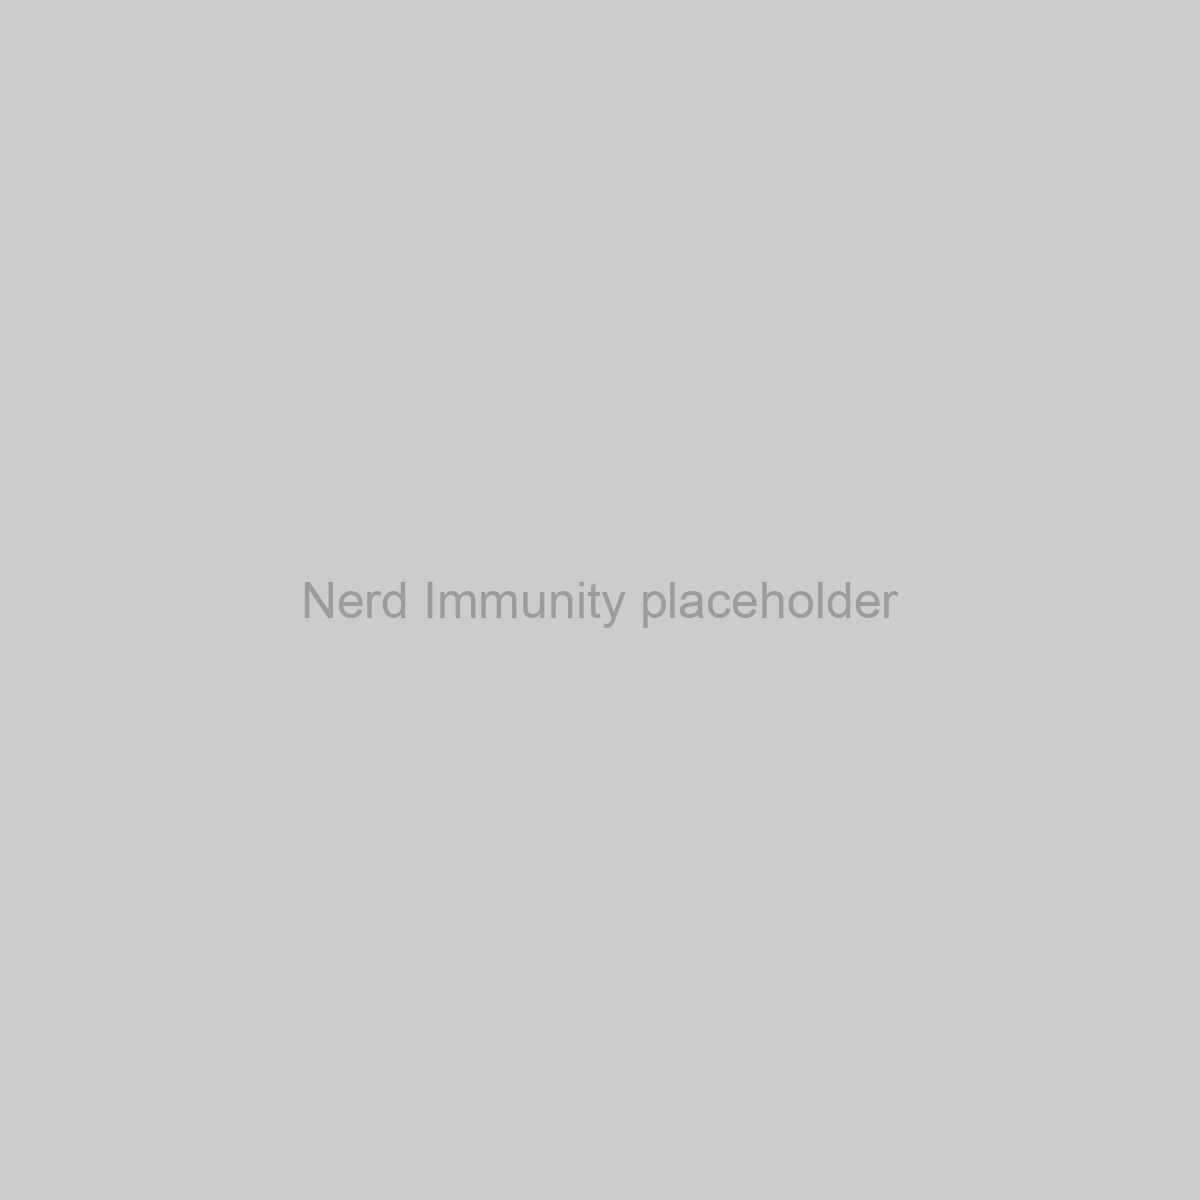 Nerd Immunity Placeholder Image